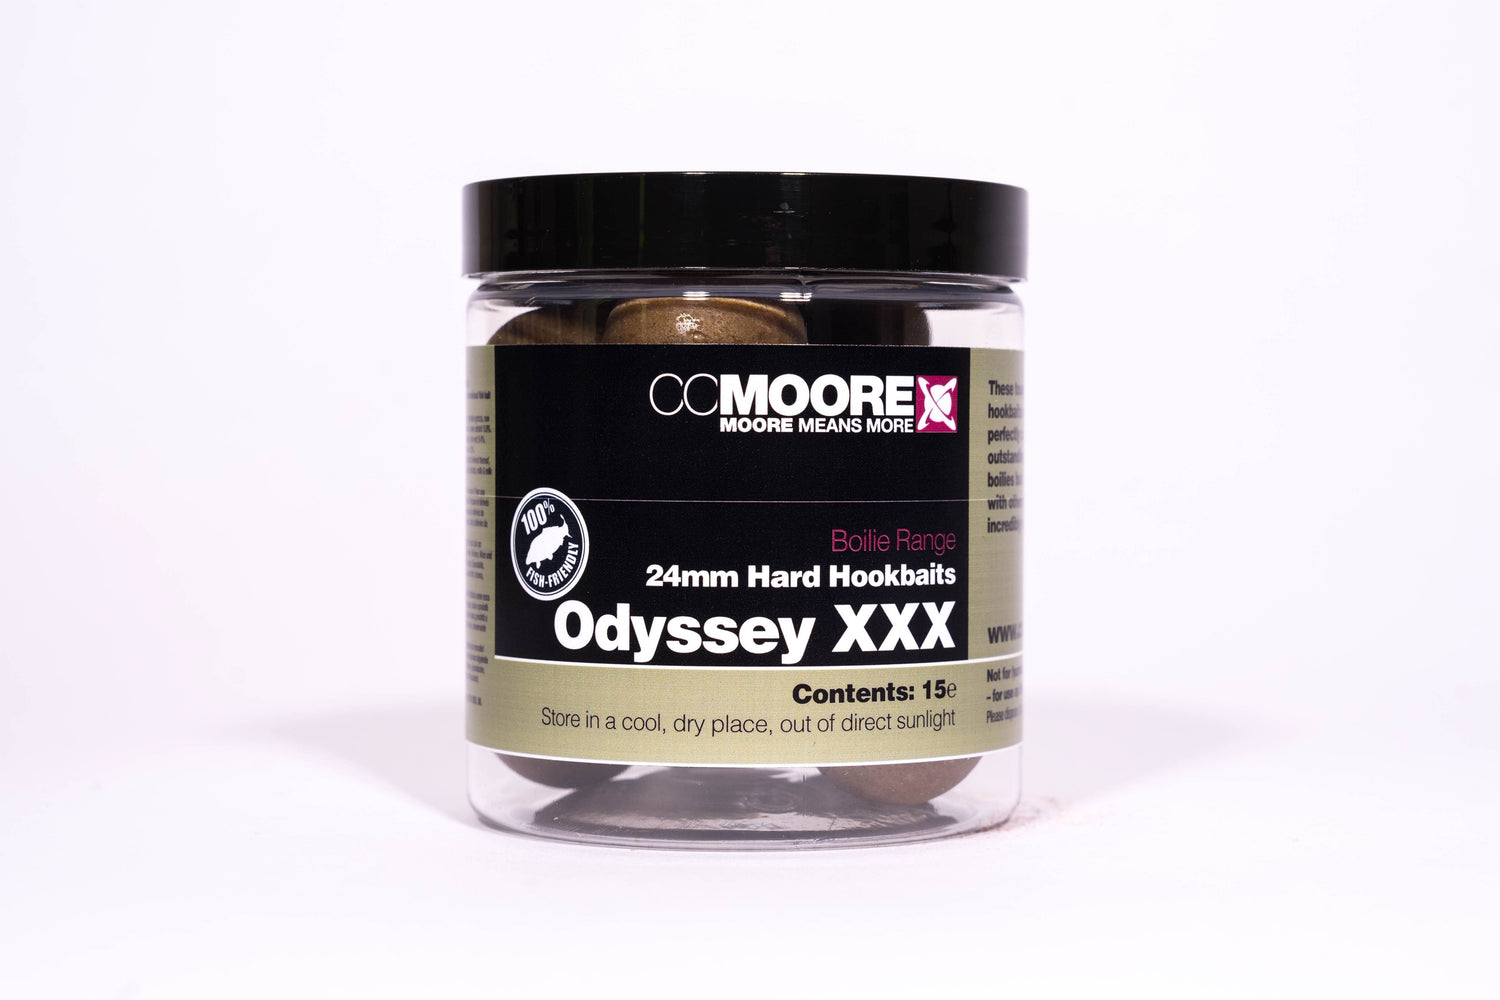 CC Moore Odyssey XXX Hard Hookbaits 24mm